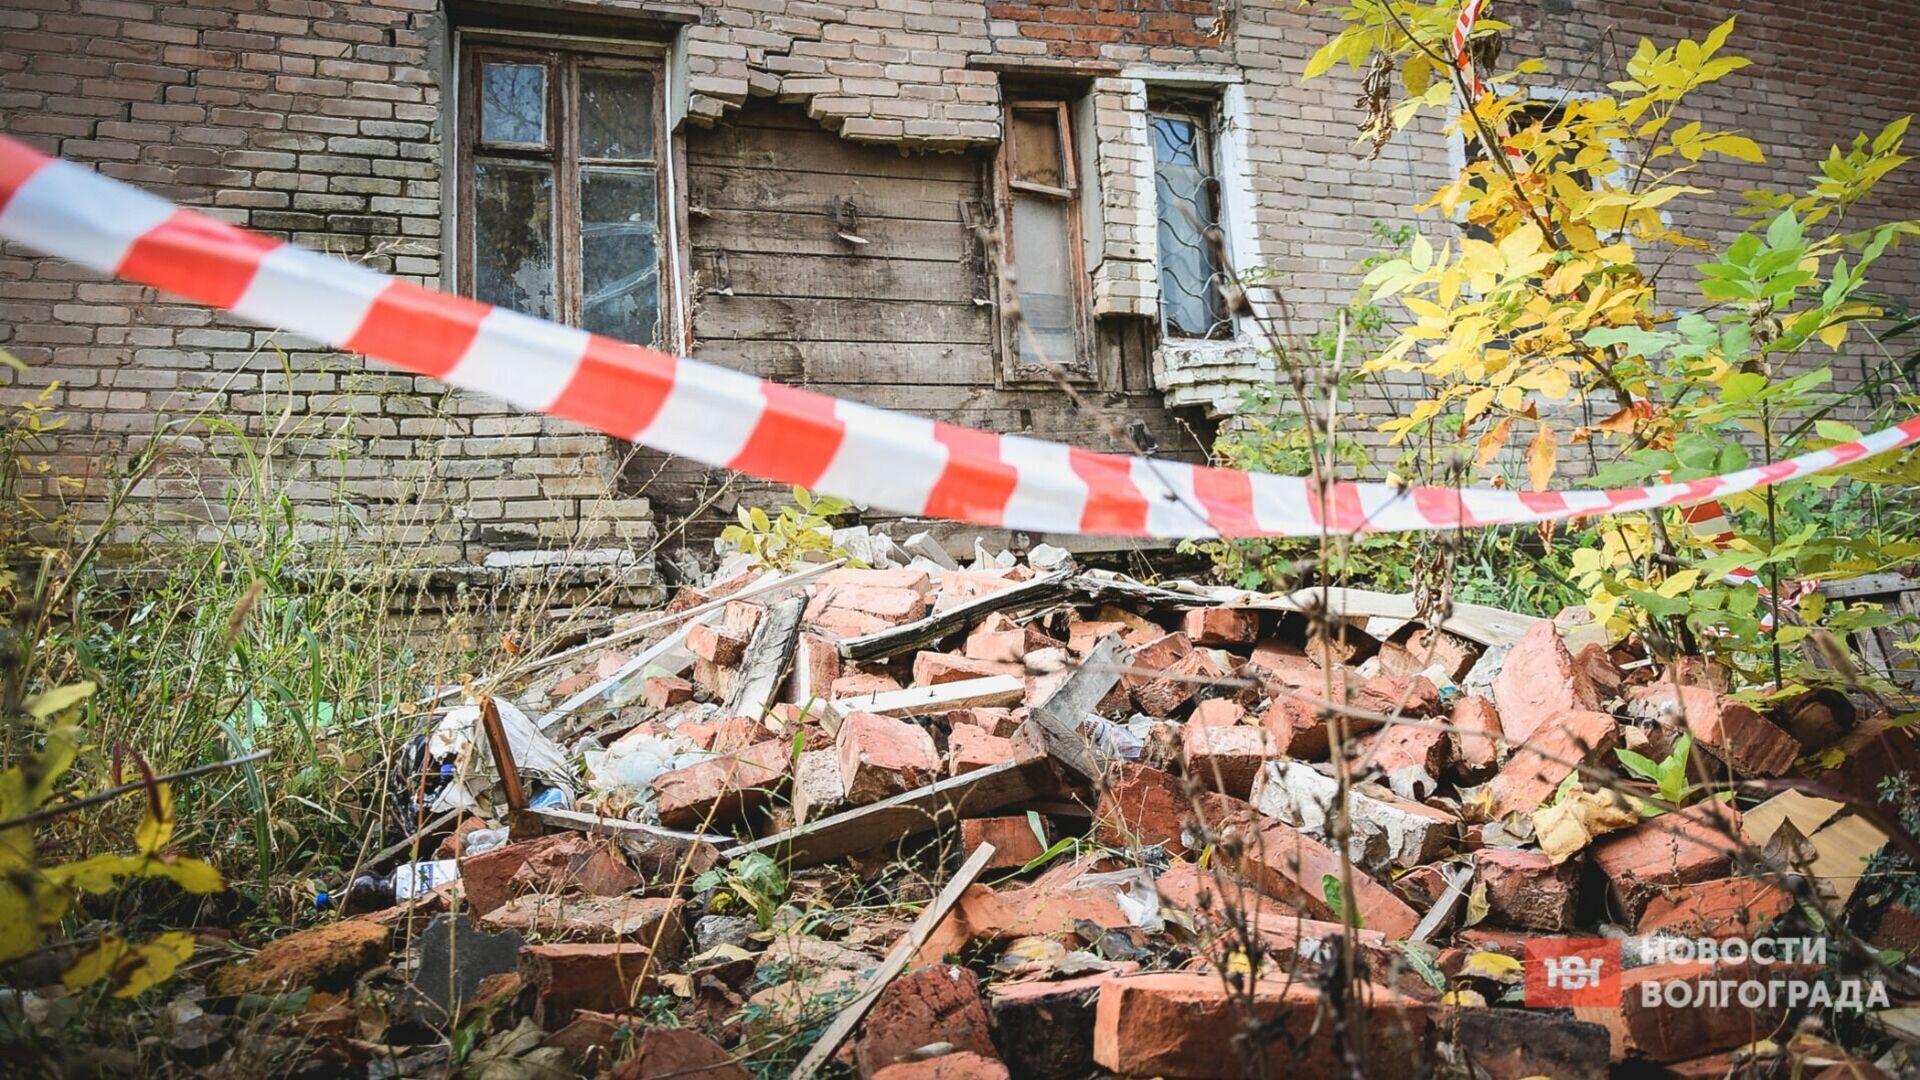 Названы подрядчики для сноса аварийных домов в Волгограде